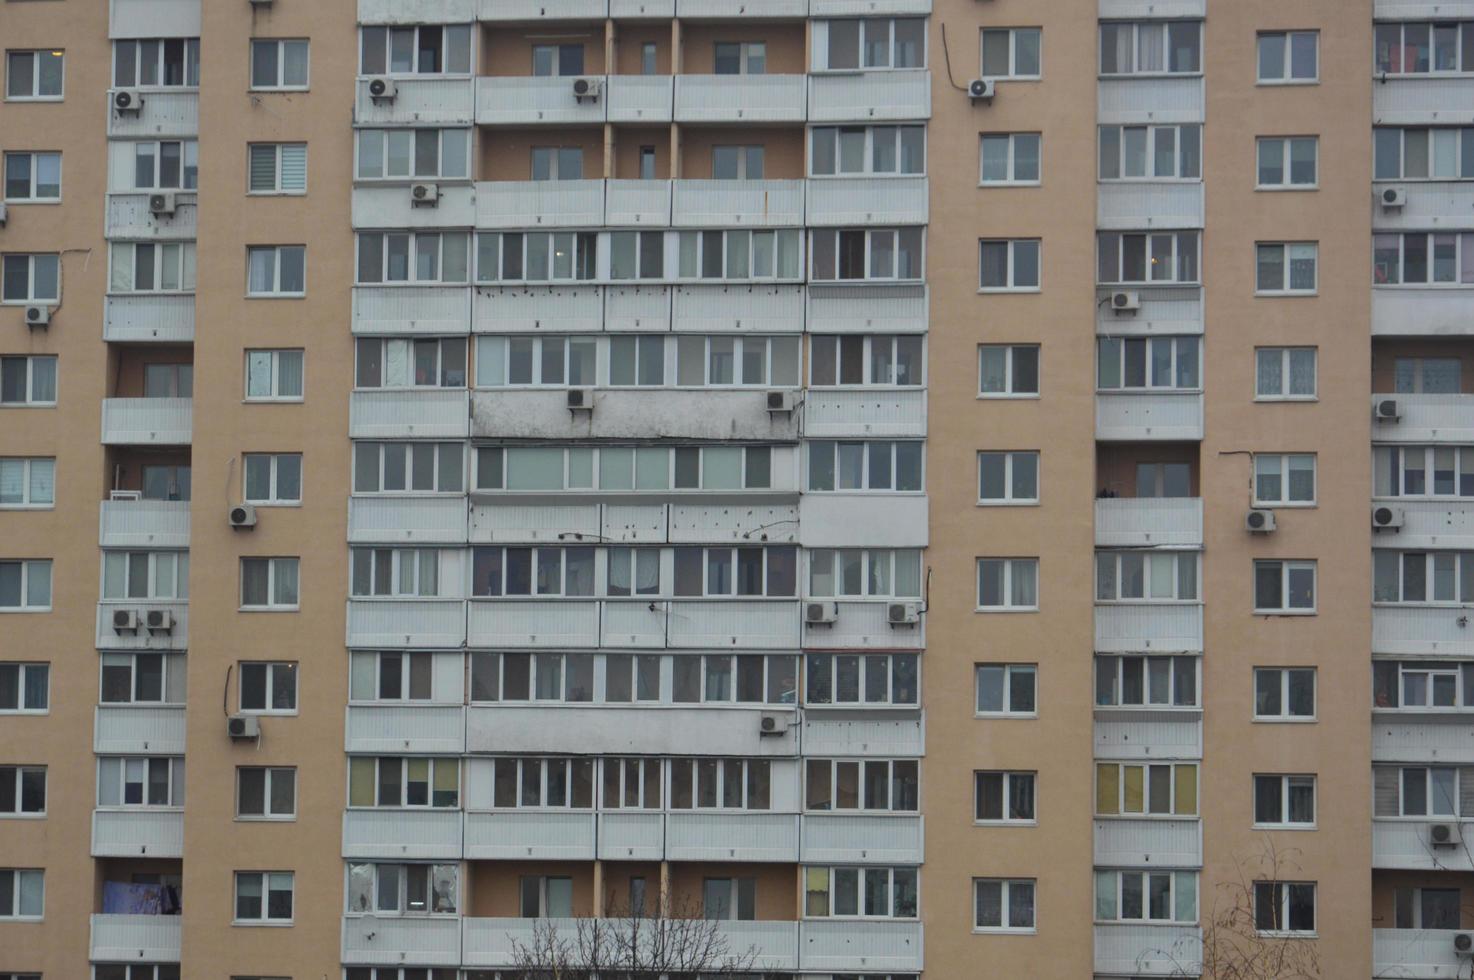 panorama delle facciate dei condomini residenziali a più piani della città foto